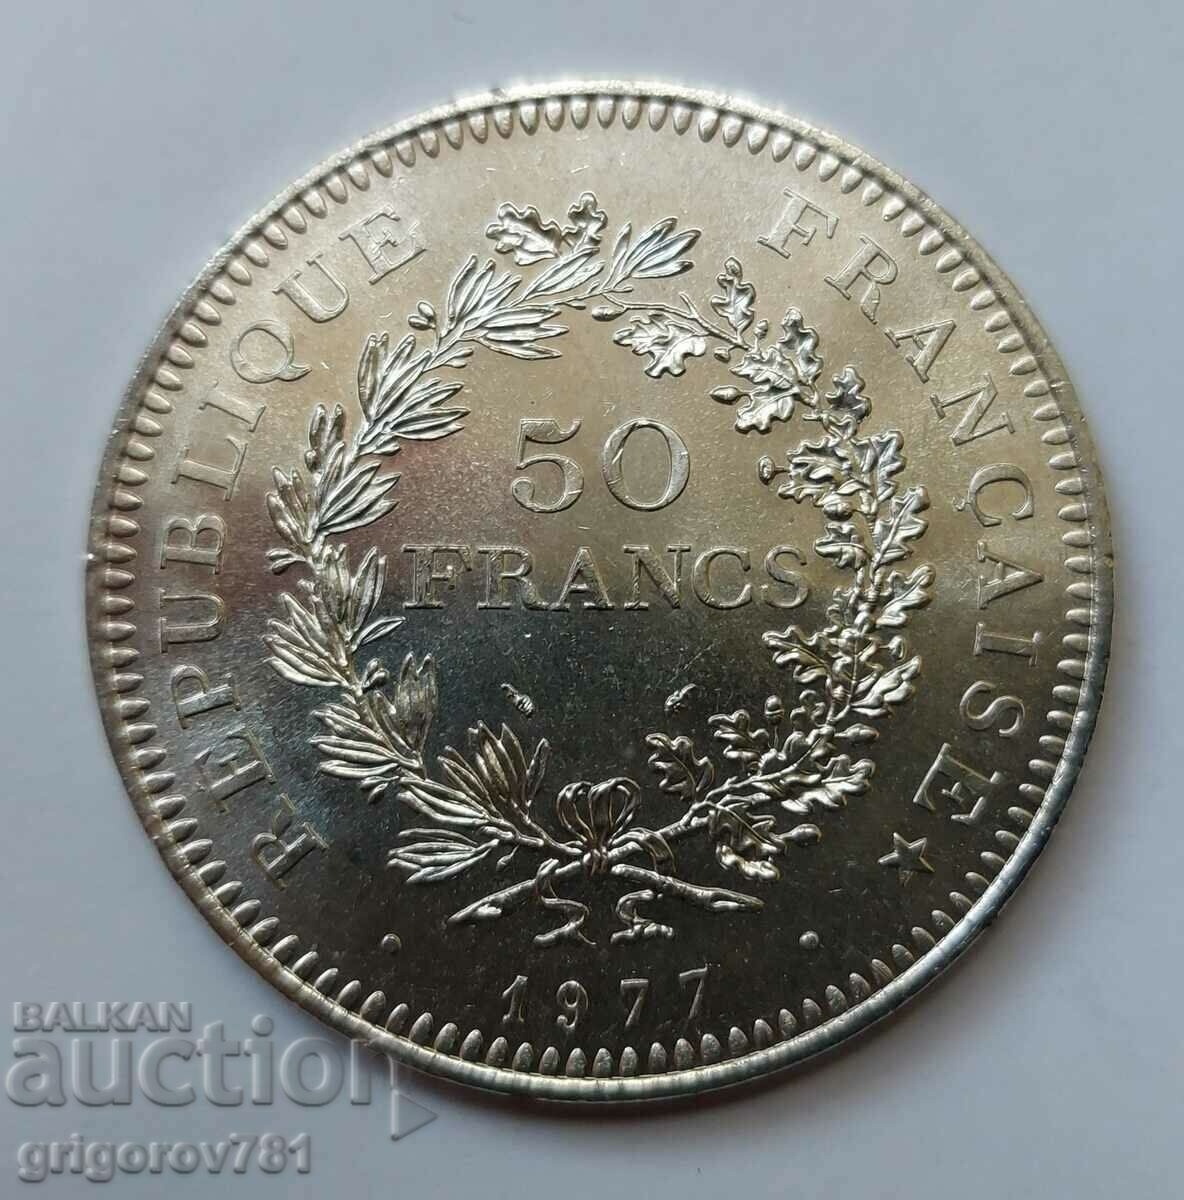 50 Franci Argint Franta 1977 - Moneda de argint #35